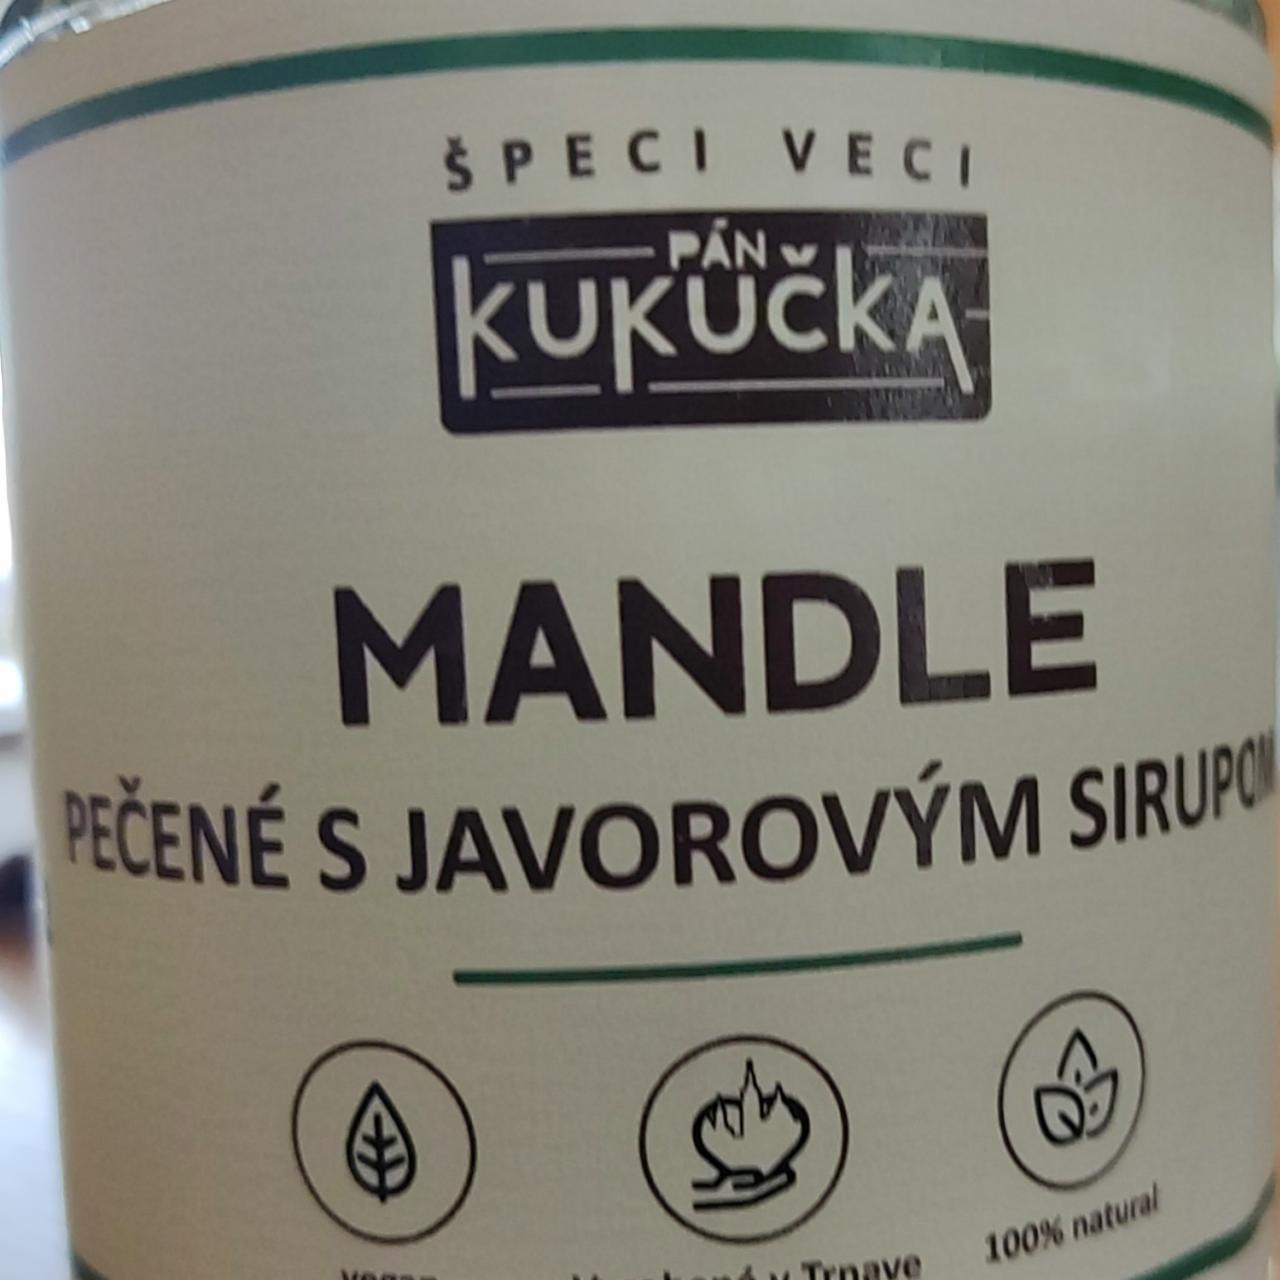 Fotografie - Mandle pečené s javorovým sirupom Pán Kukučka